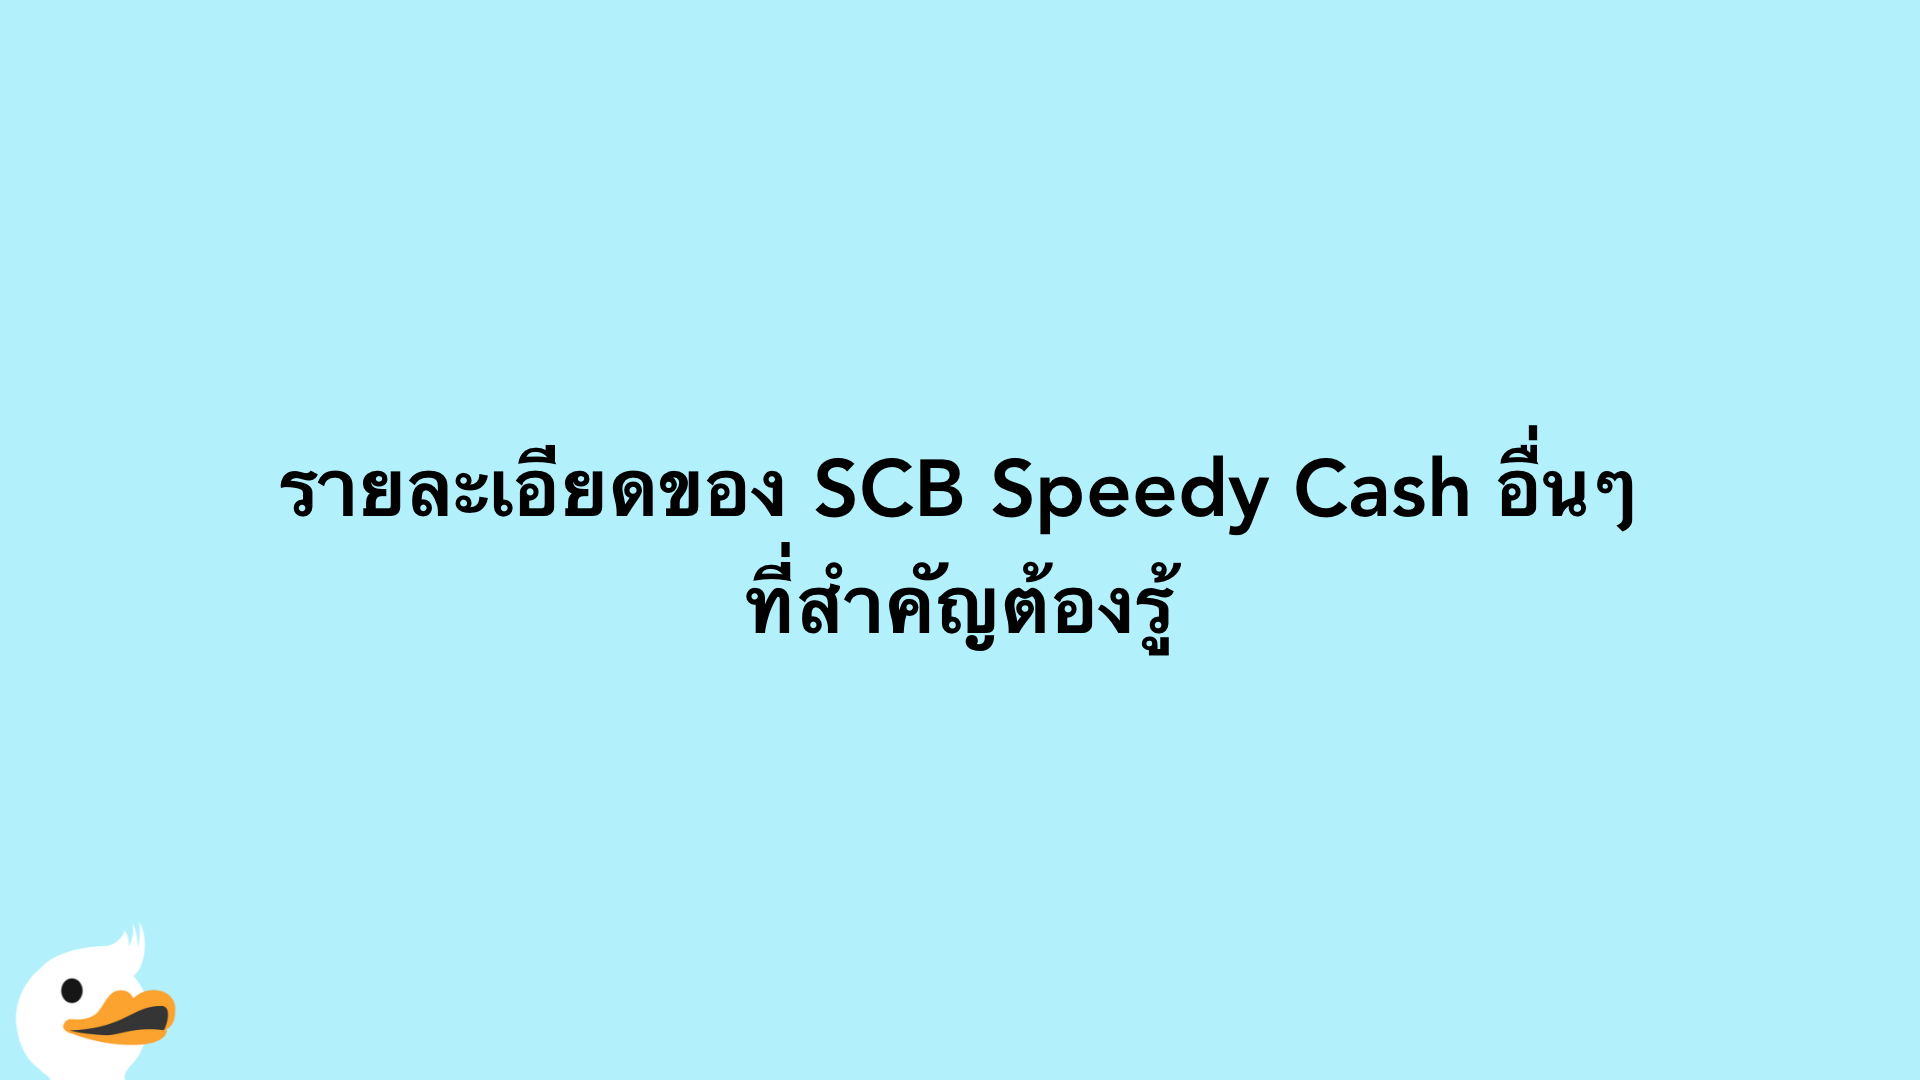 รายละเอียดของ SCB Speedy Cash อื่นๆที่สำคัญต้องรู้